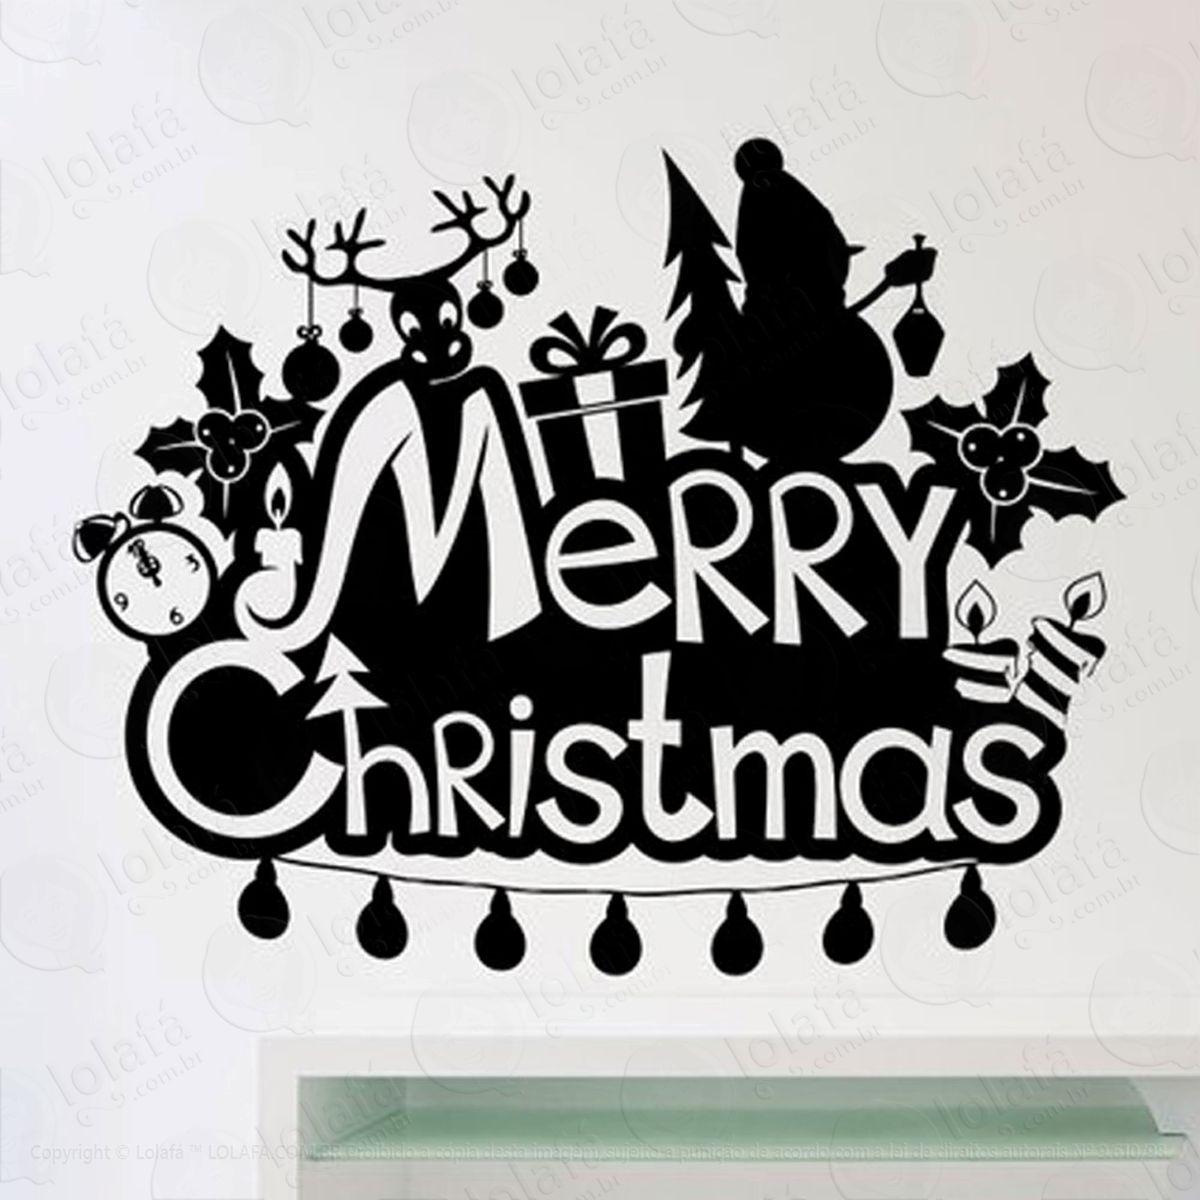 marry christmas adesivo de natal para vitrine, parede, porta de vidro - decoração natalina mod:131